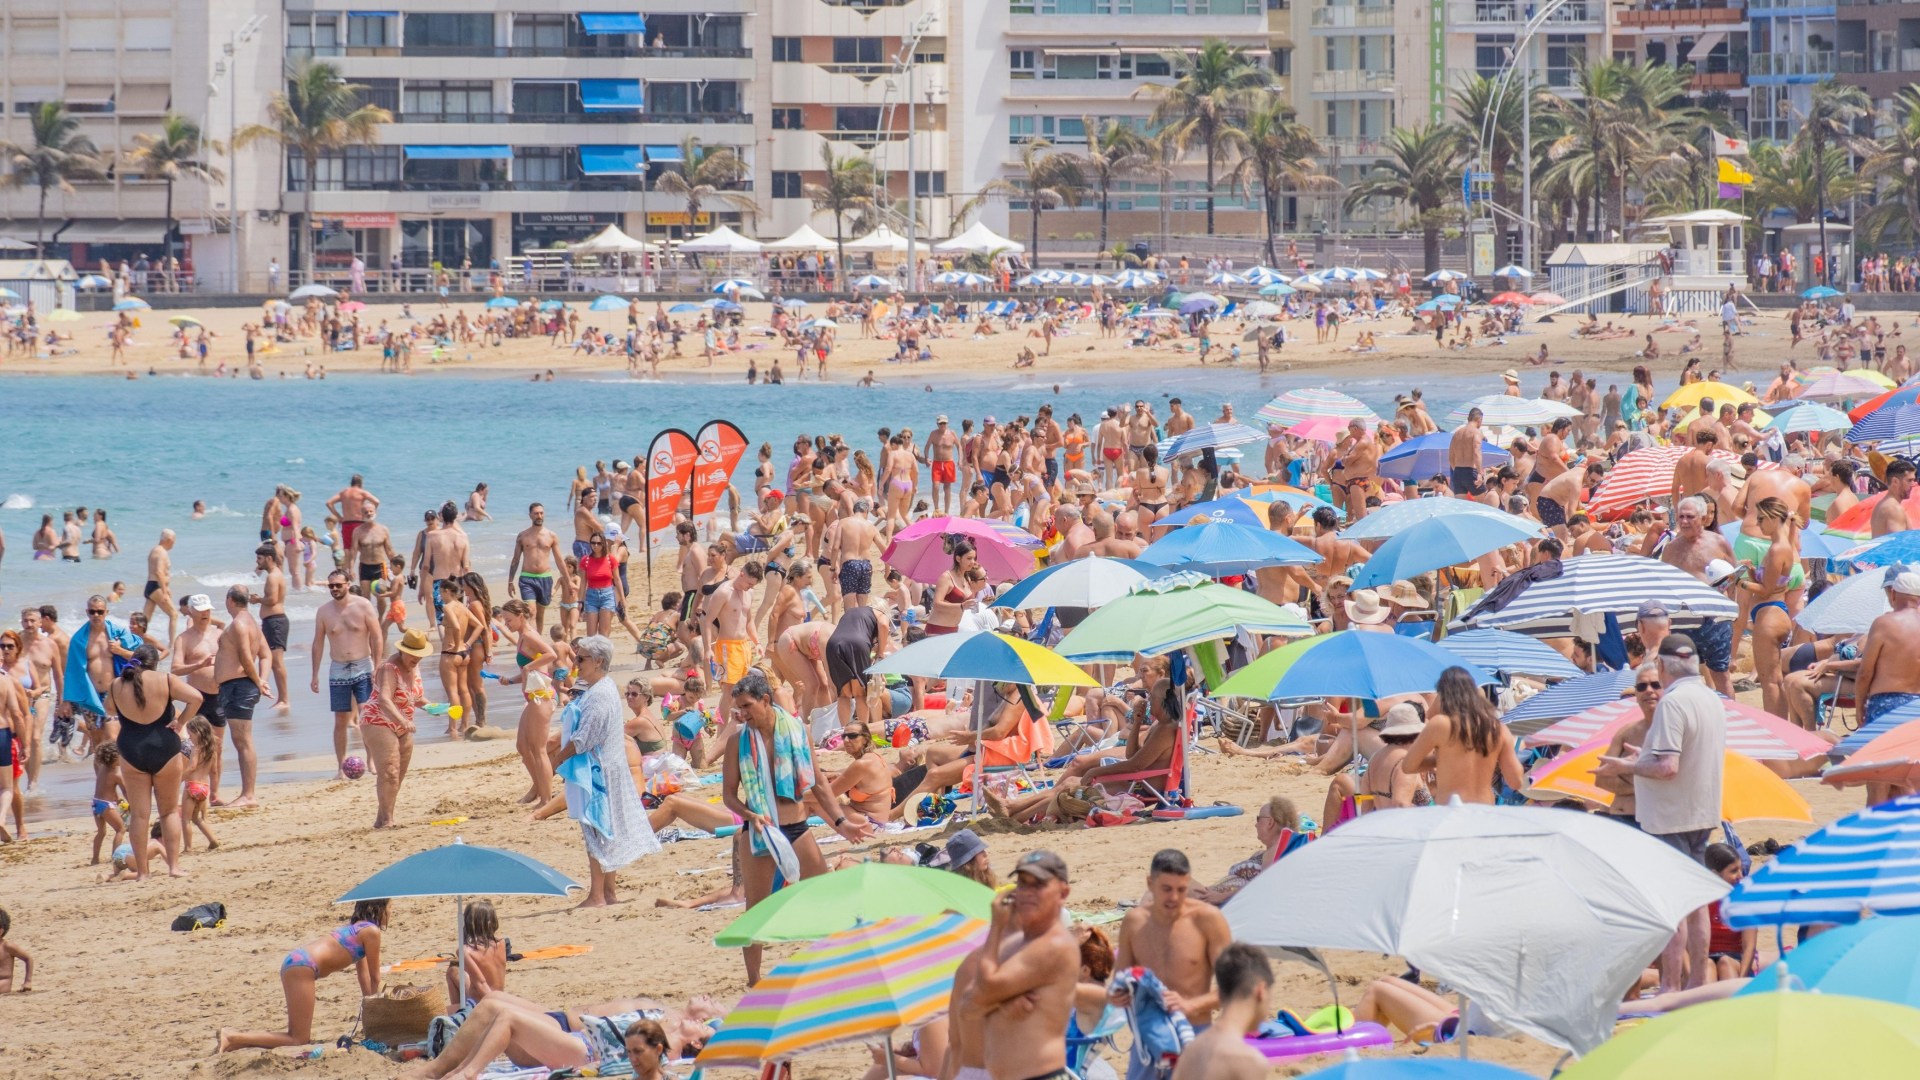 Británicos temerosos llaman a hoteles en Tenerife para preguntar si estarán SEGUROS durante sus vacaciones en medio de un preocupante revuelo antiturista